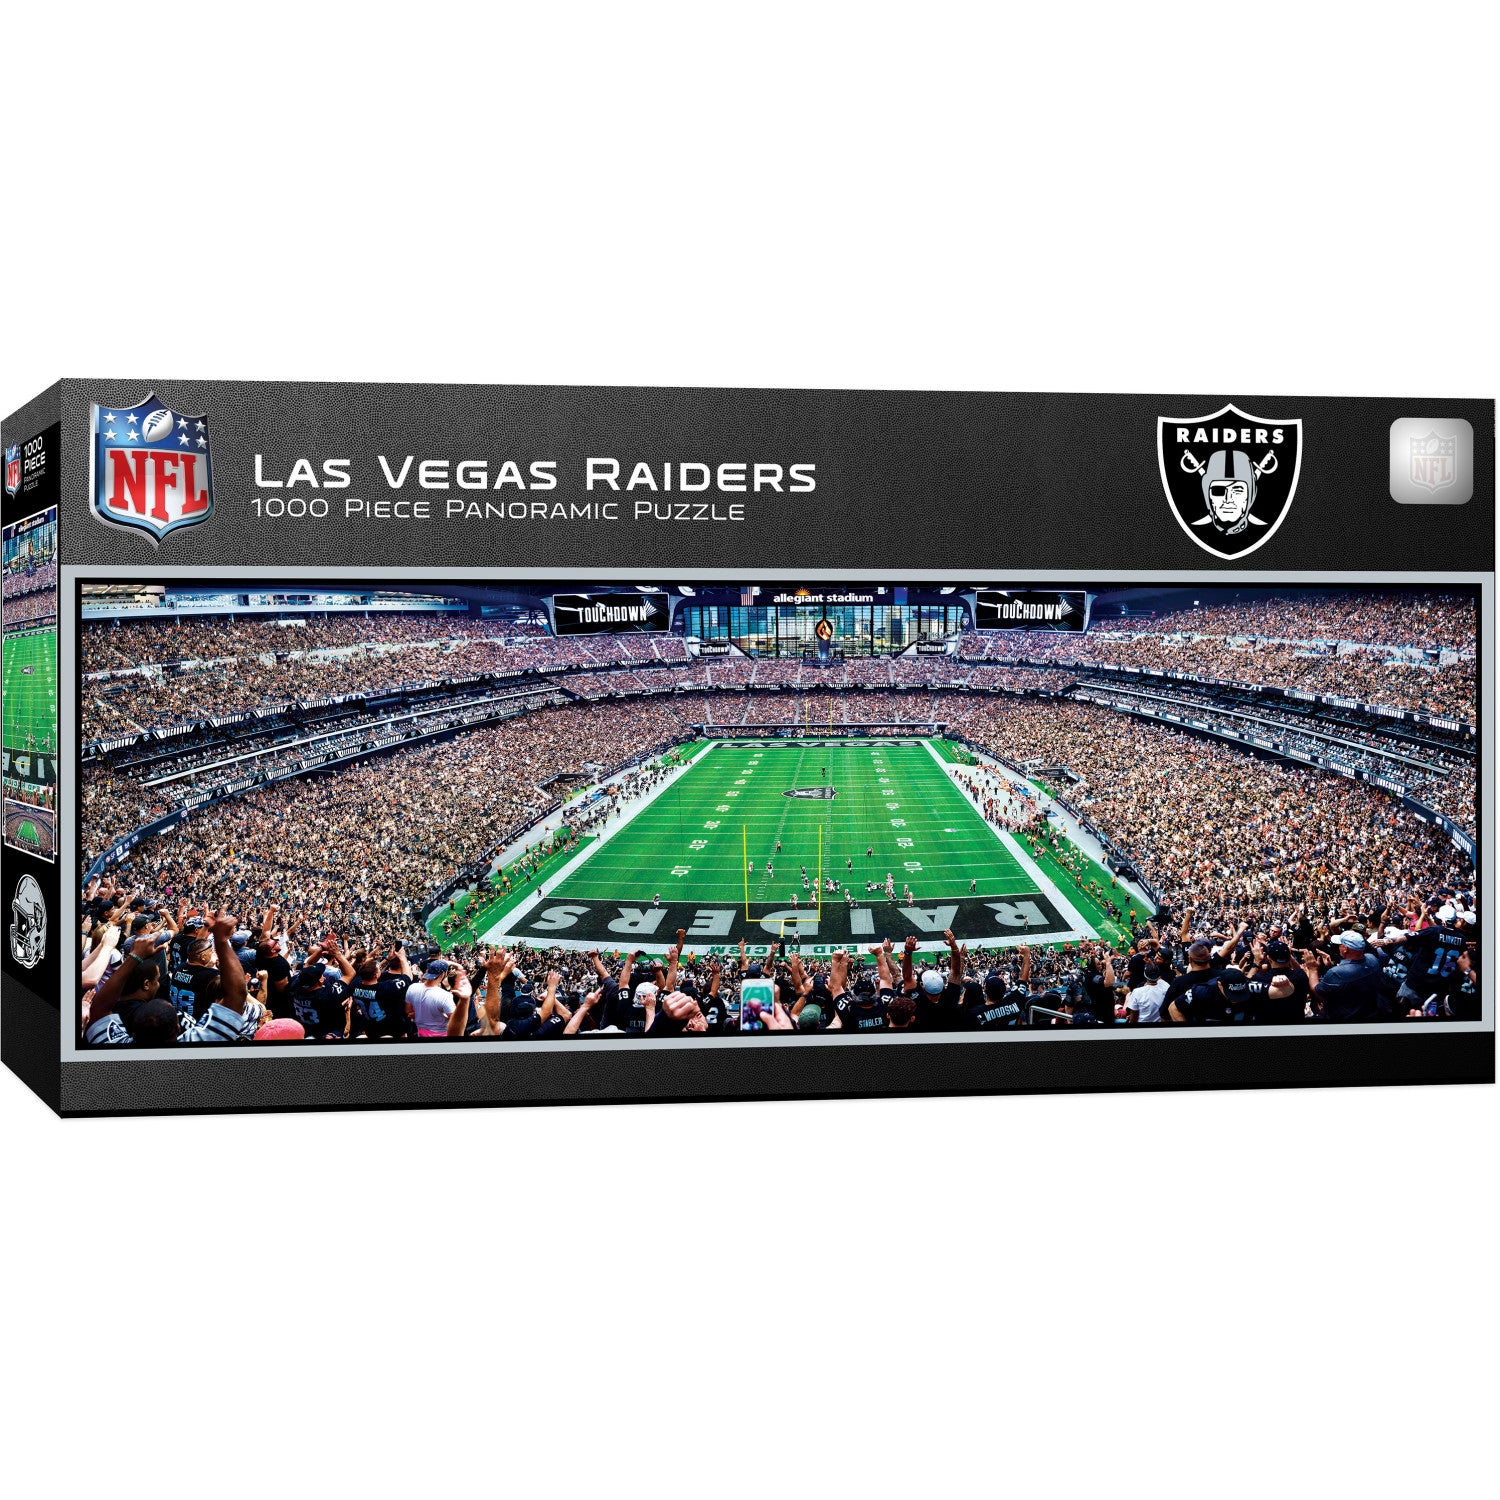 Las Vegas Raiders - 1000 Piece Panoramic Puzzle - End View